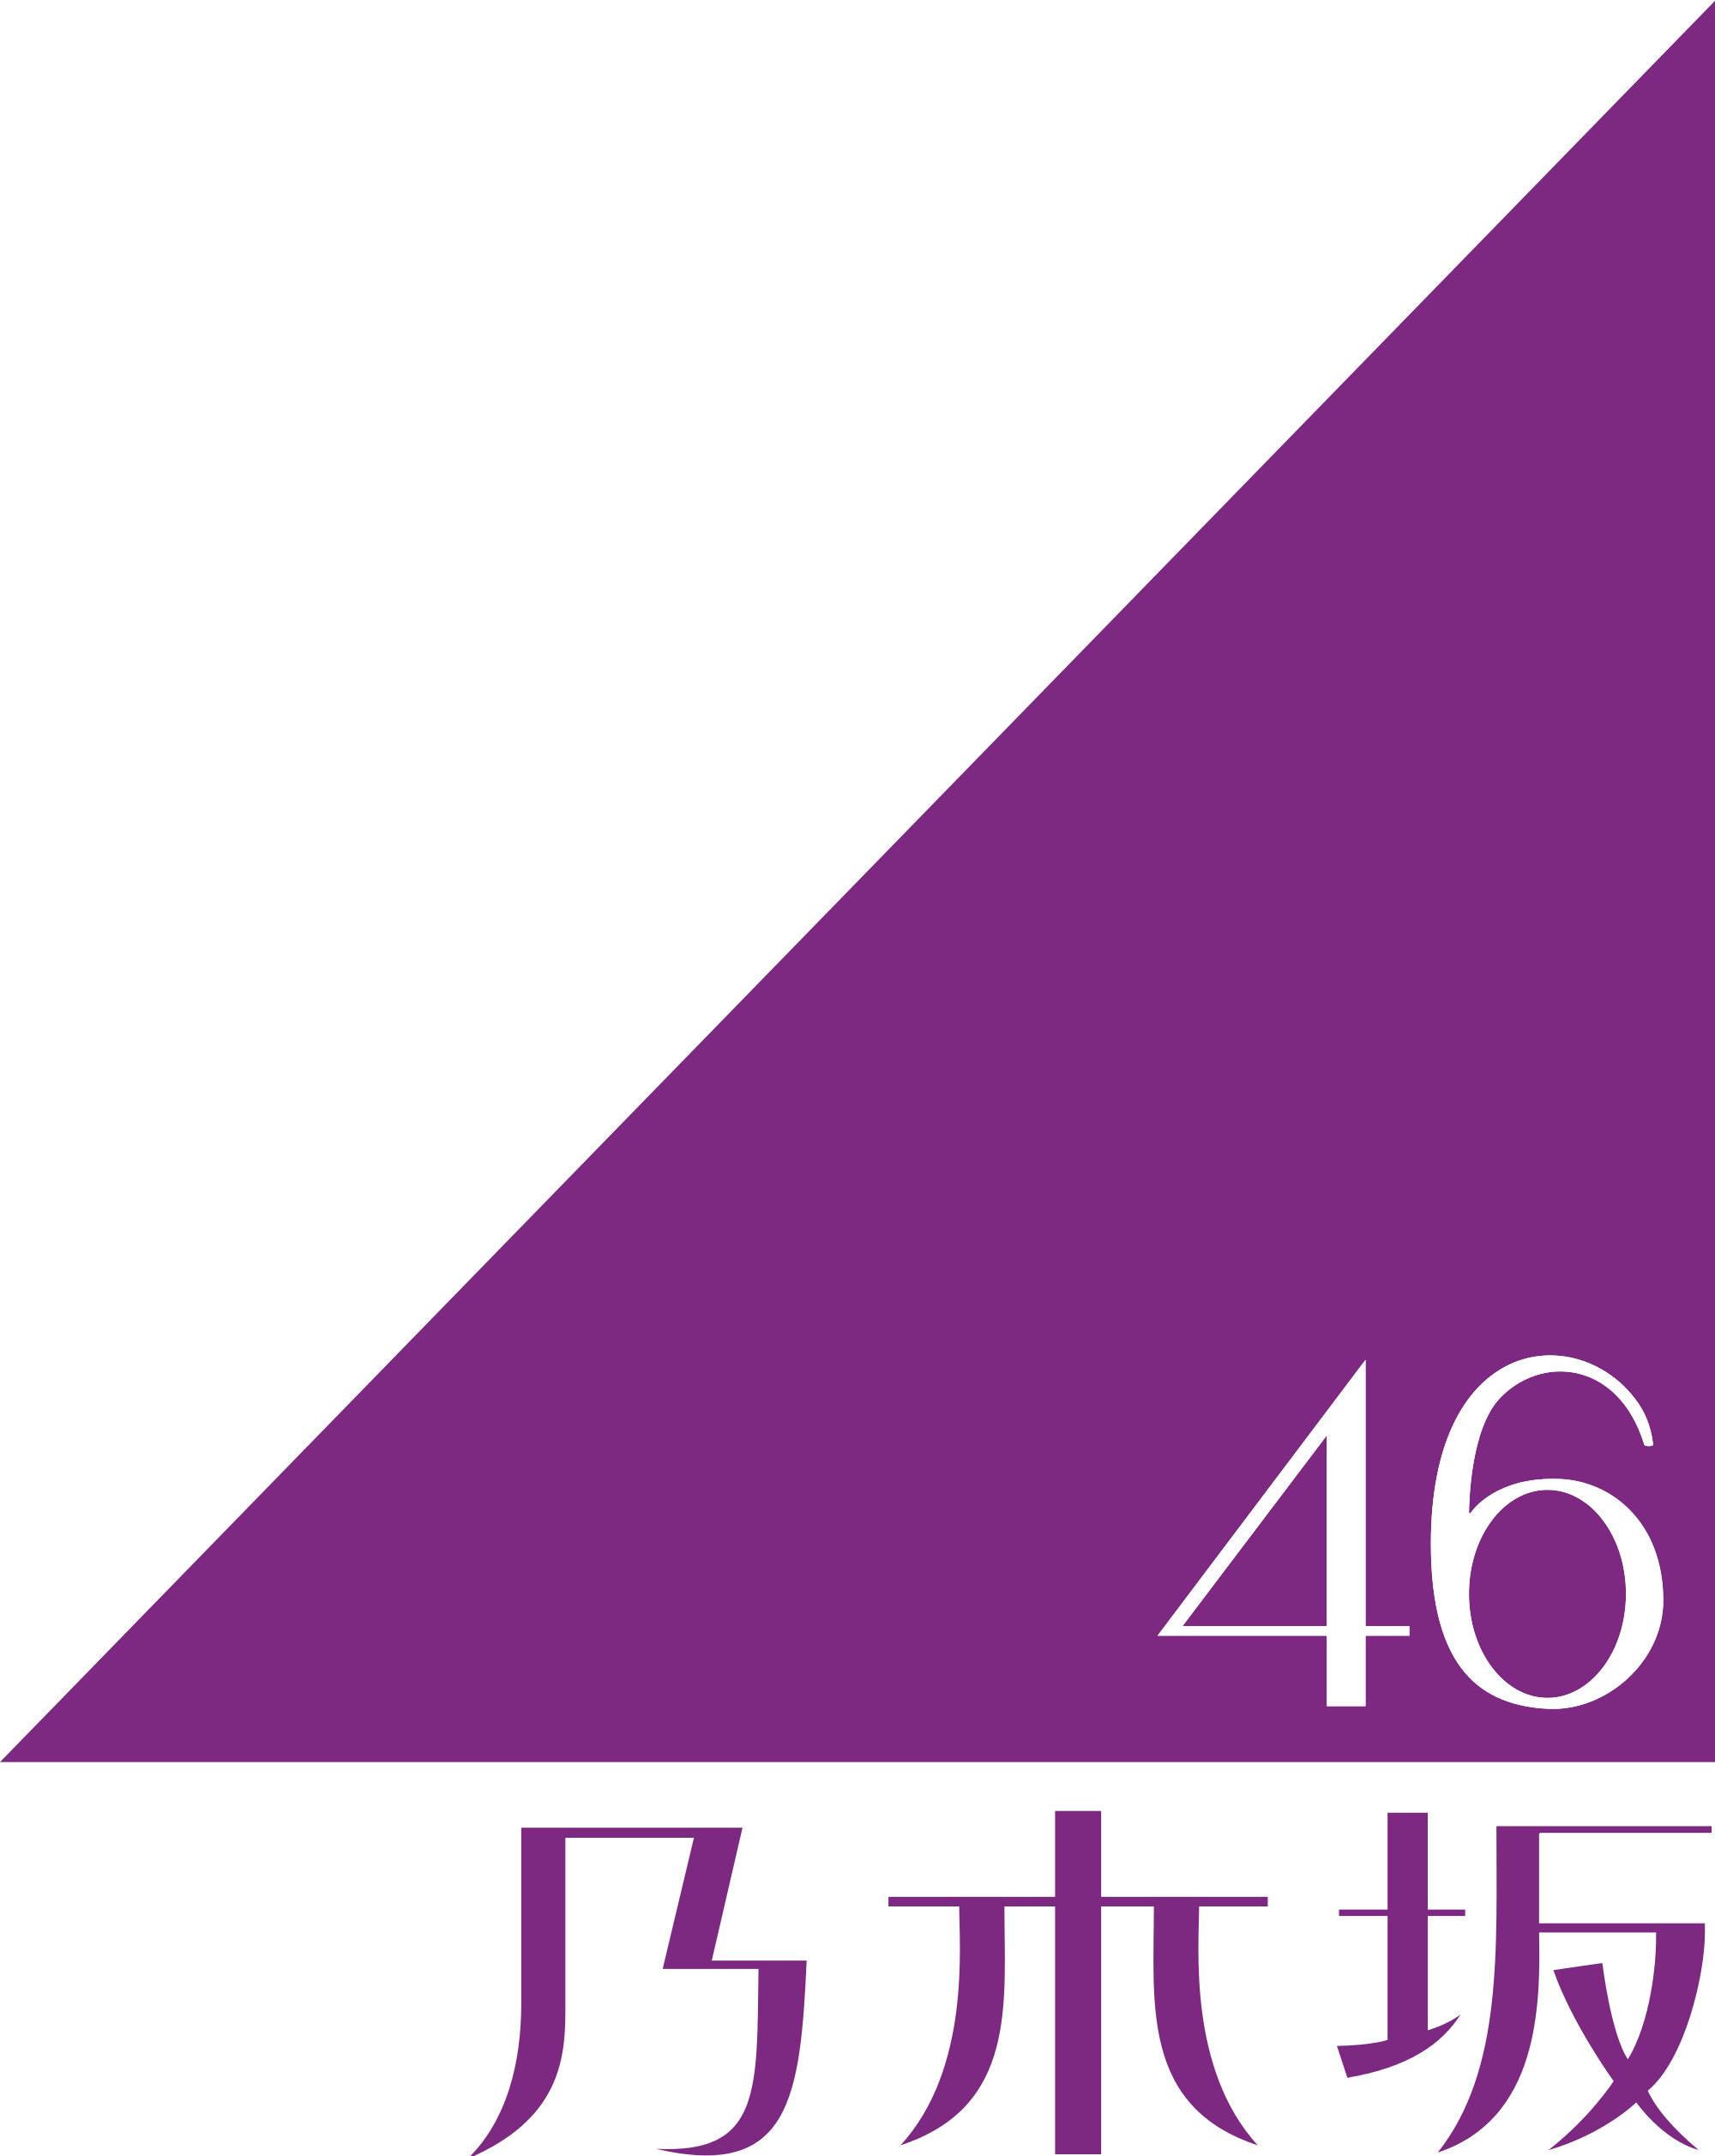 「紫」は乃木坂46のイメージカラー